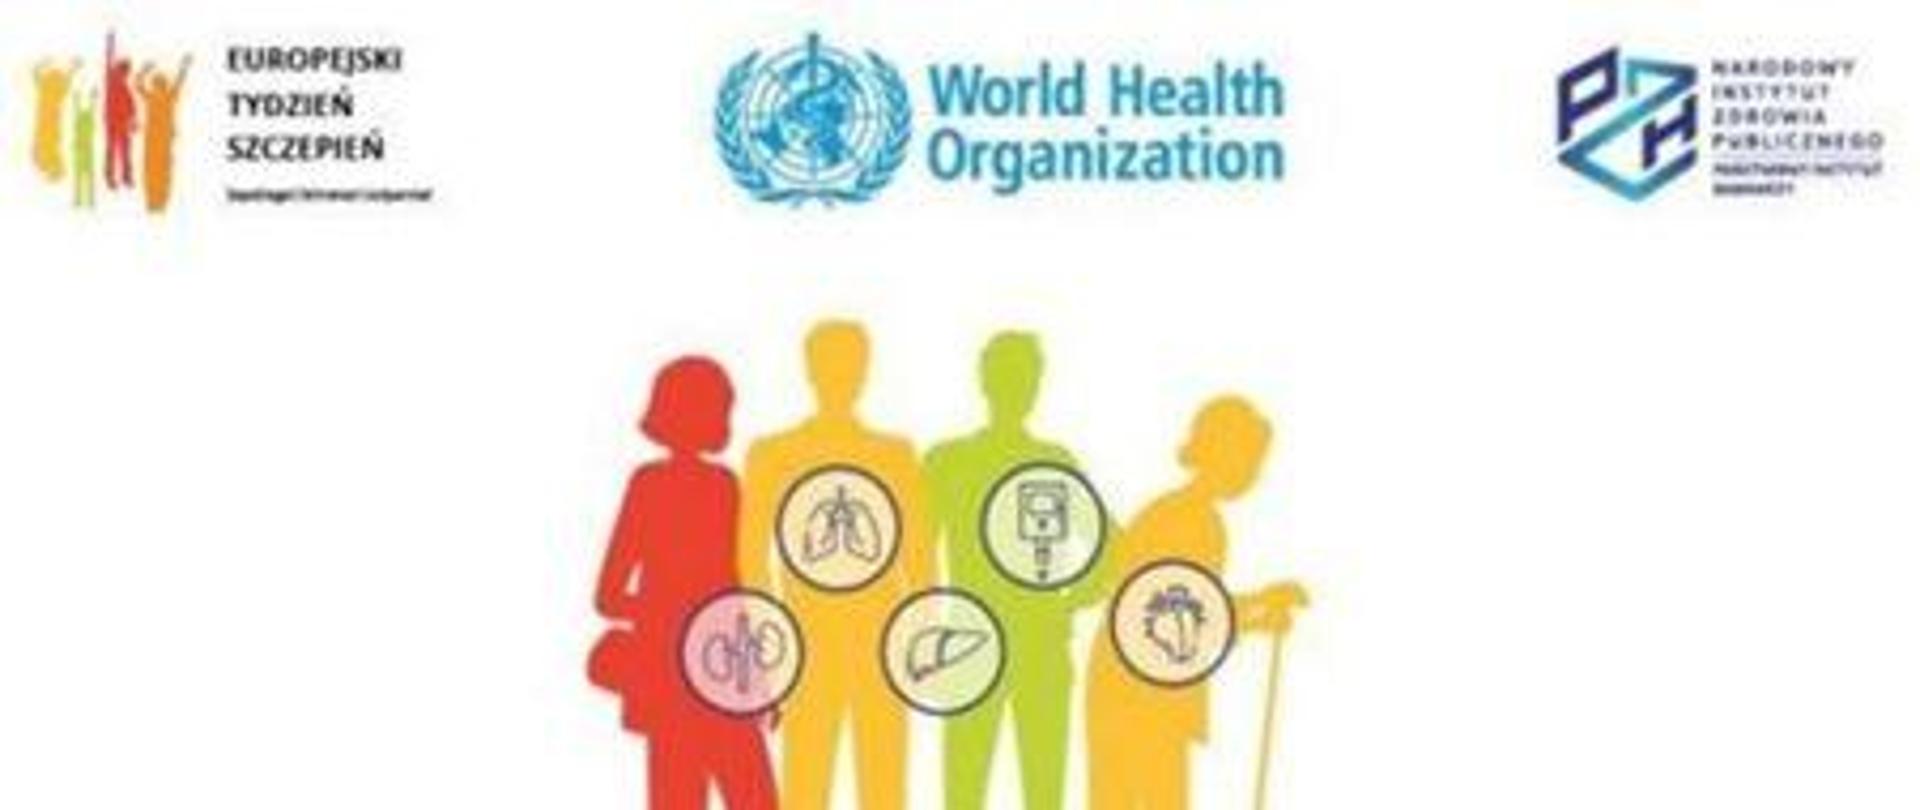 logotypy Europejski Tydzień Szczepień, WHO, Narodowy Instytut Zdrowia Publicznego, sylwetki ludzi z zaznaczonymi organami